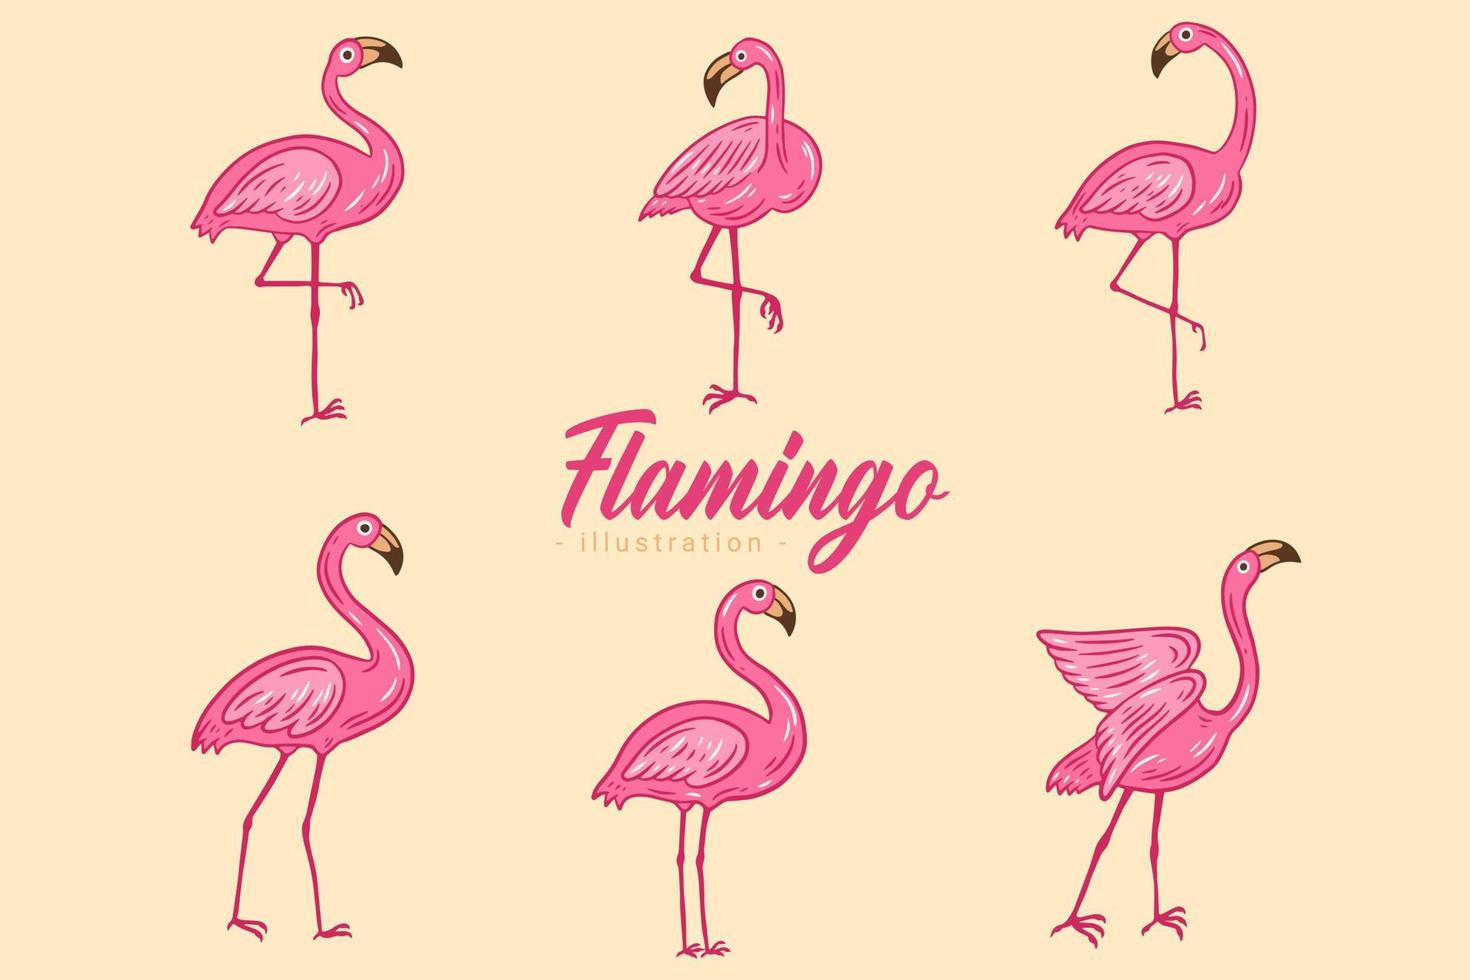 set di simpatici fenicotteri rosa uccelli fenicotteri estetici collezione in stile piatto esotico tropicale disegnato a mano vettore